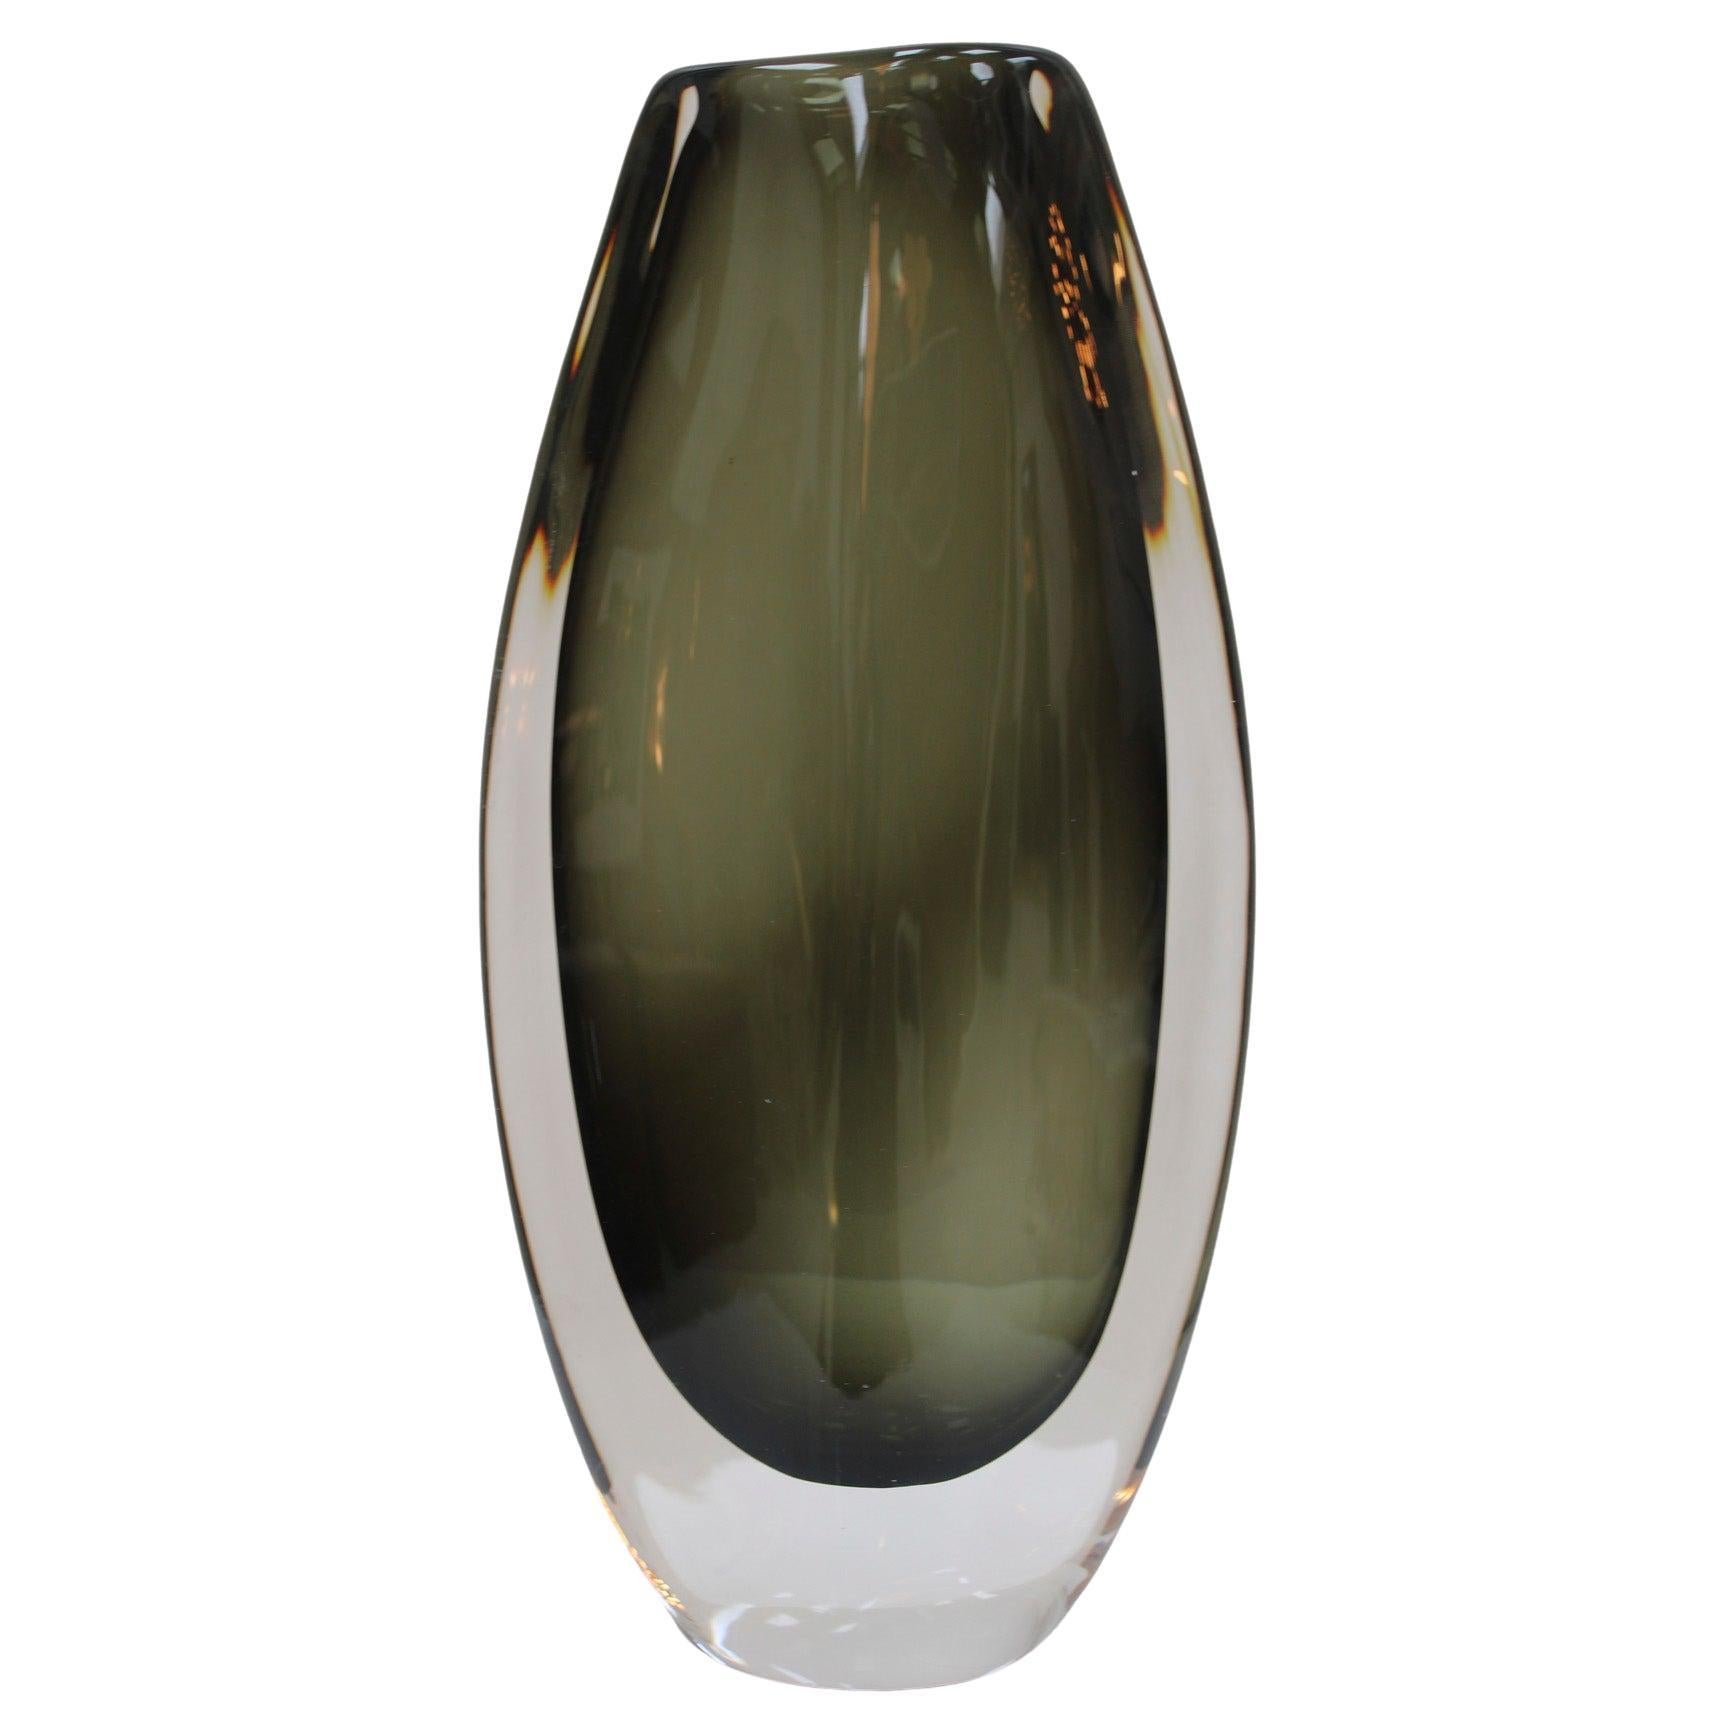 Midcentury Black Sommerso Murano Glass Vase by Nils Landberg for Orrefors 1960 For Sale